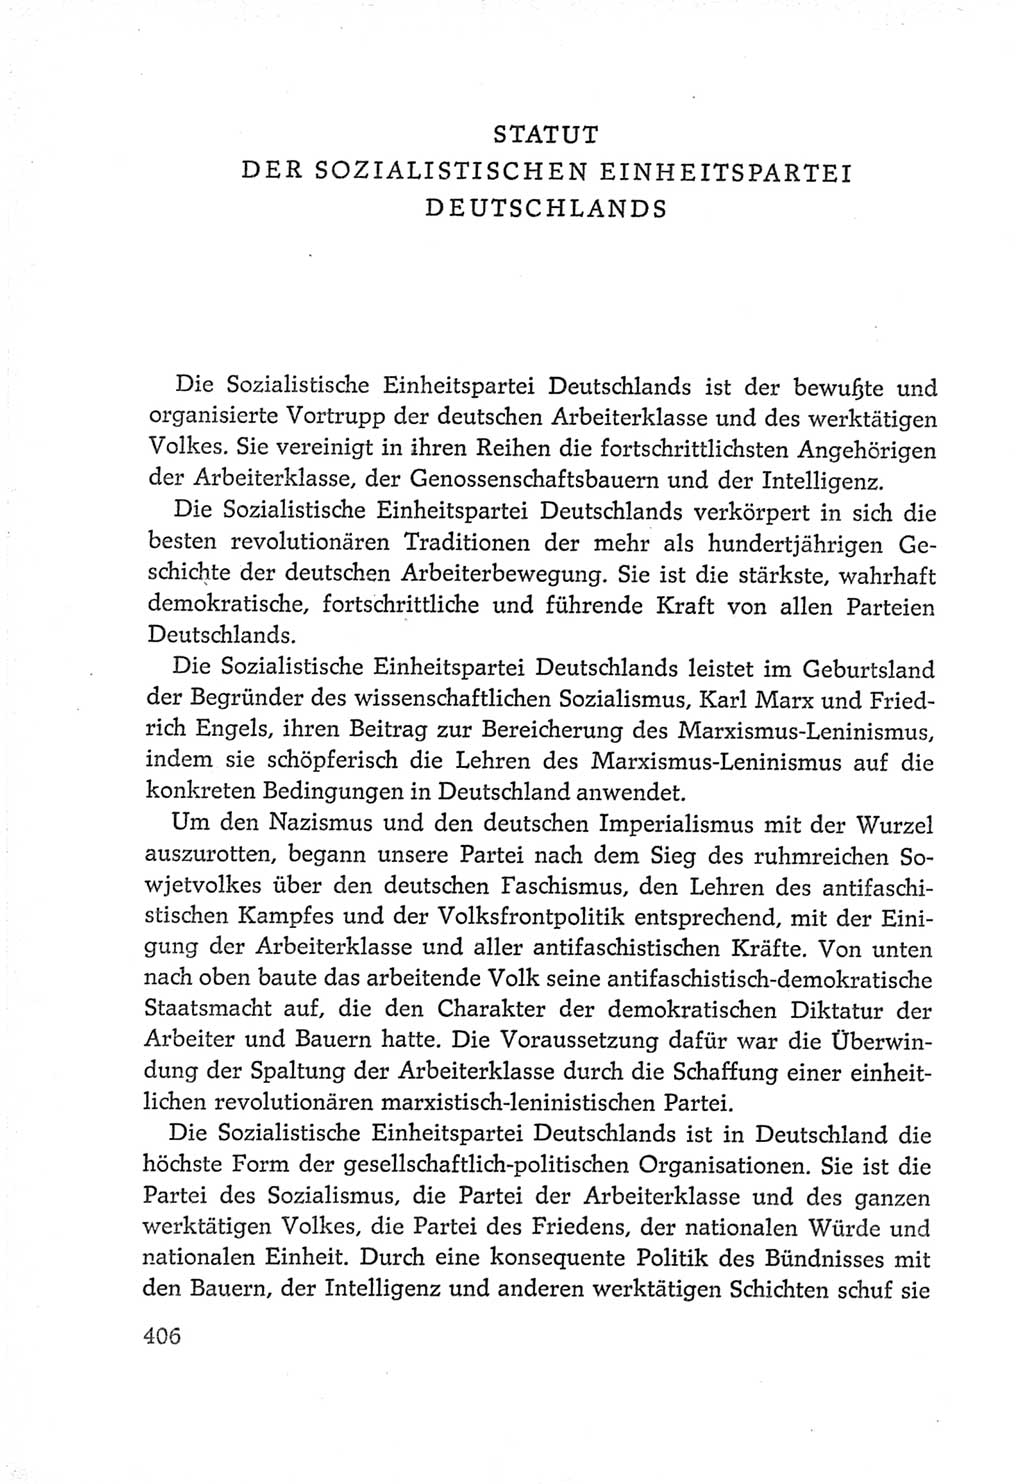 Protokoll der Verhandlungen des Ⅵ. Parteitages der Sozialistischen Einheitspartei Deutschlands (SED) [Deutsche Demokratische Republik (DDR)] 1963, Band Ⅳ, Seite 406 (Prot. Verh. Ⅵ. PT SED DDR 1963, Bd. Ⅳ, S. 406)